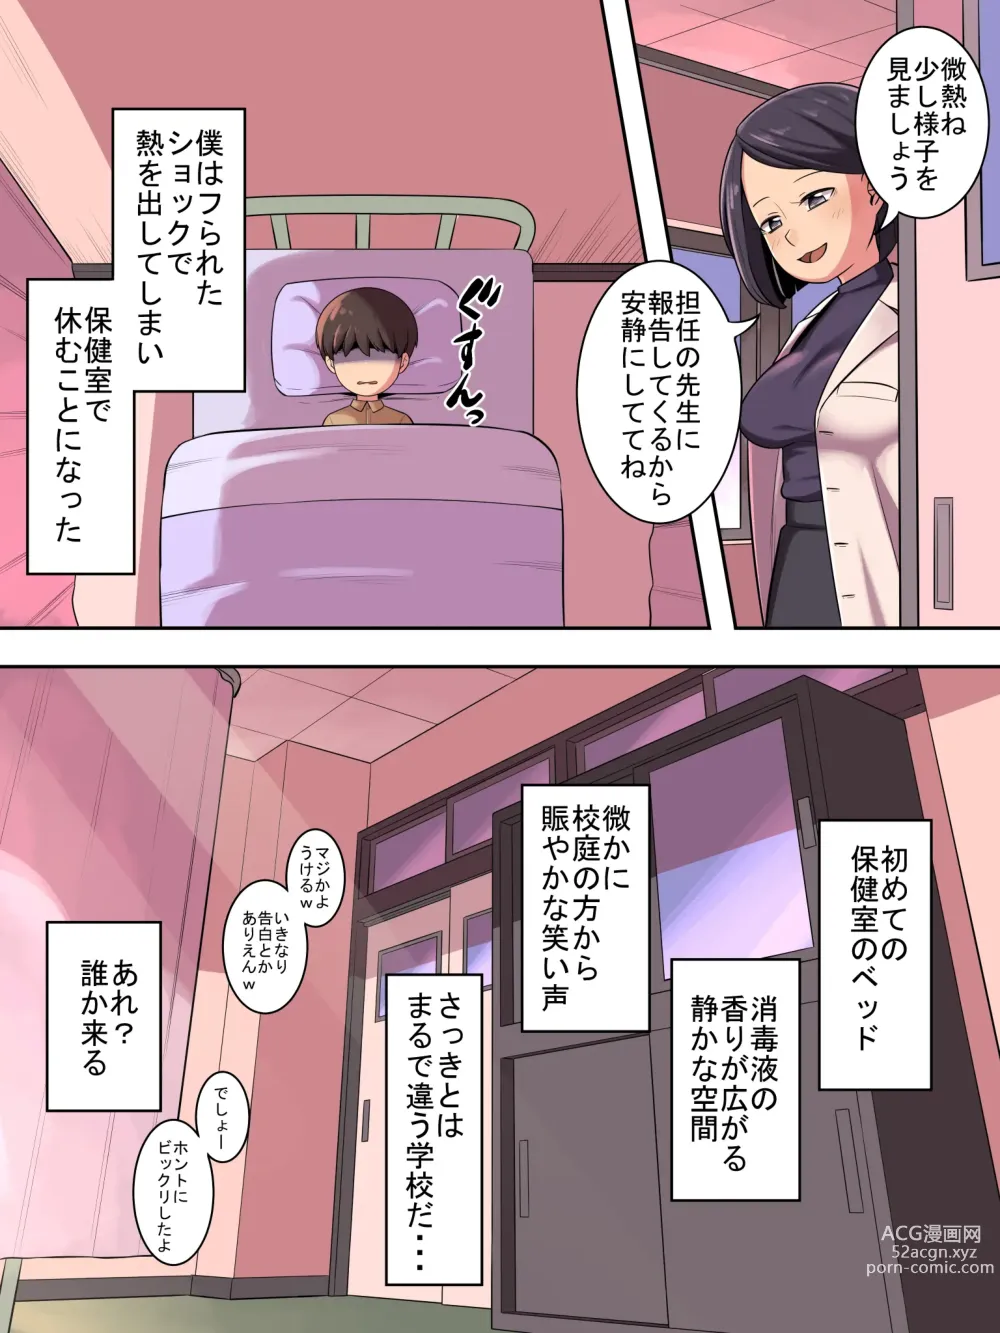 Page 3 of doujinshi Gakkou no Sumikko de 2